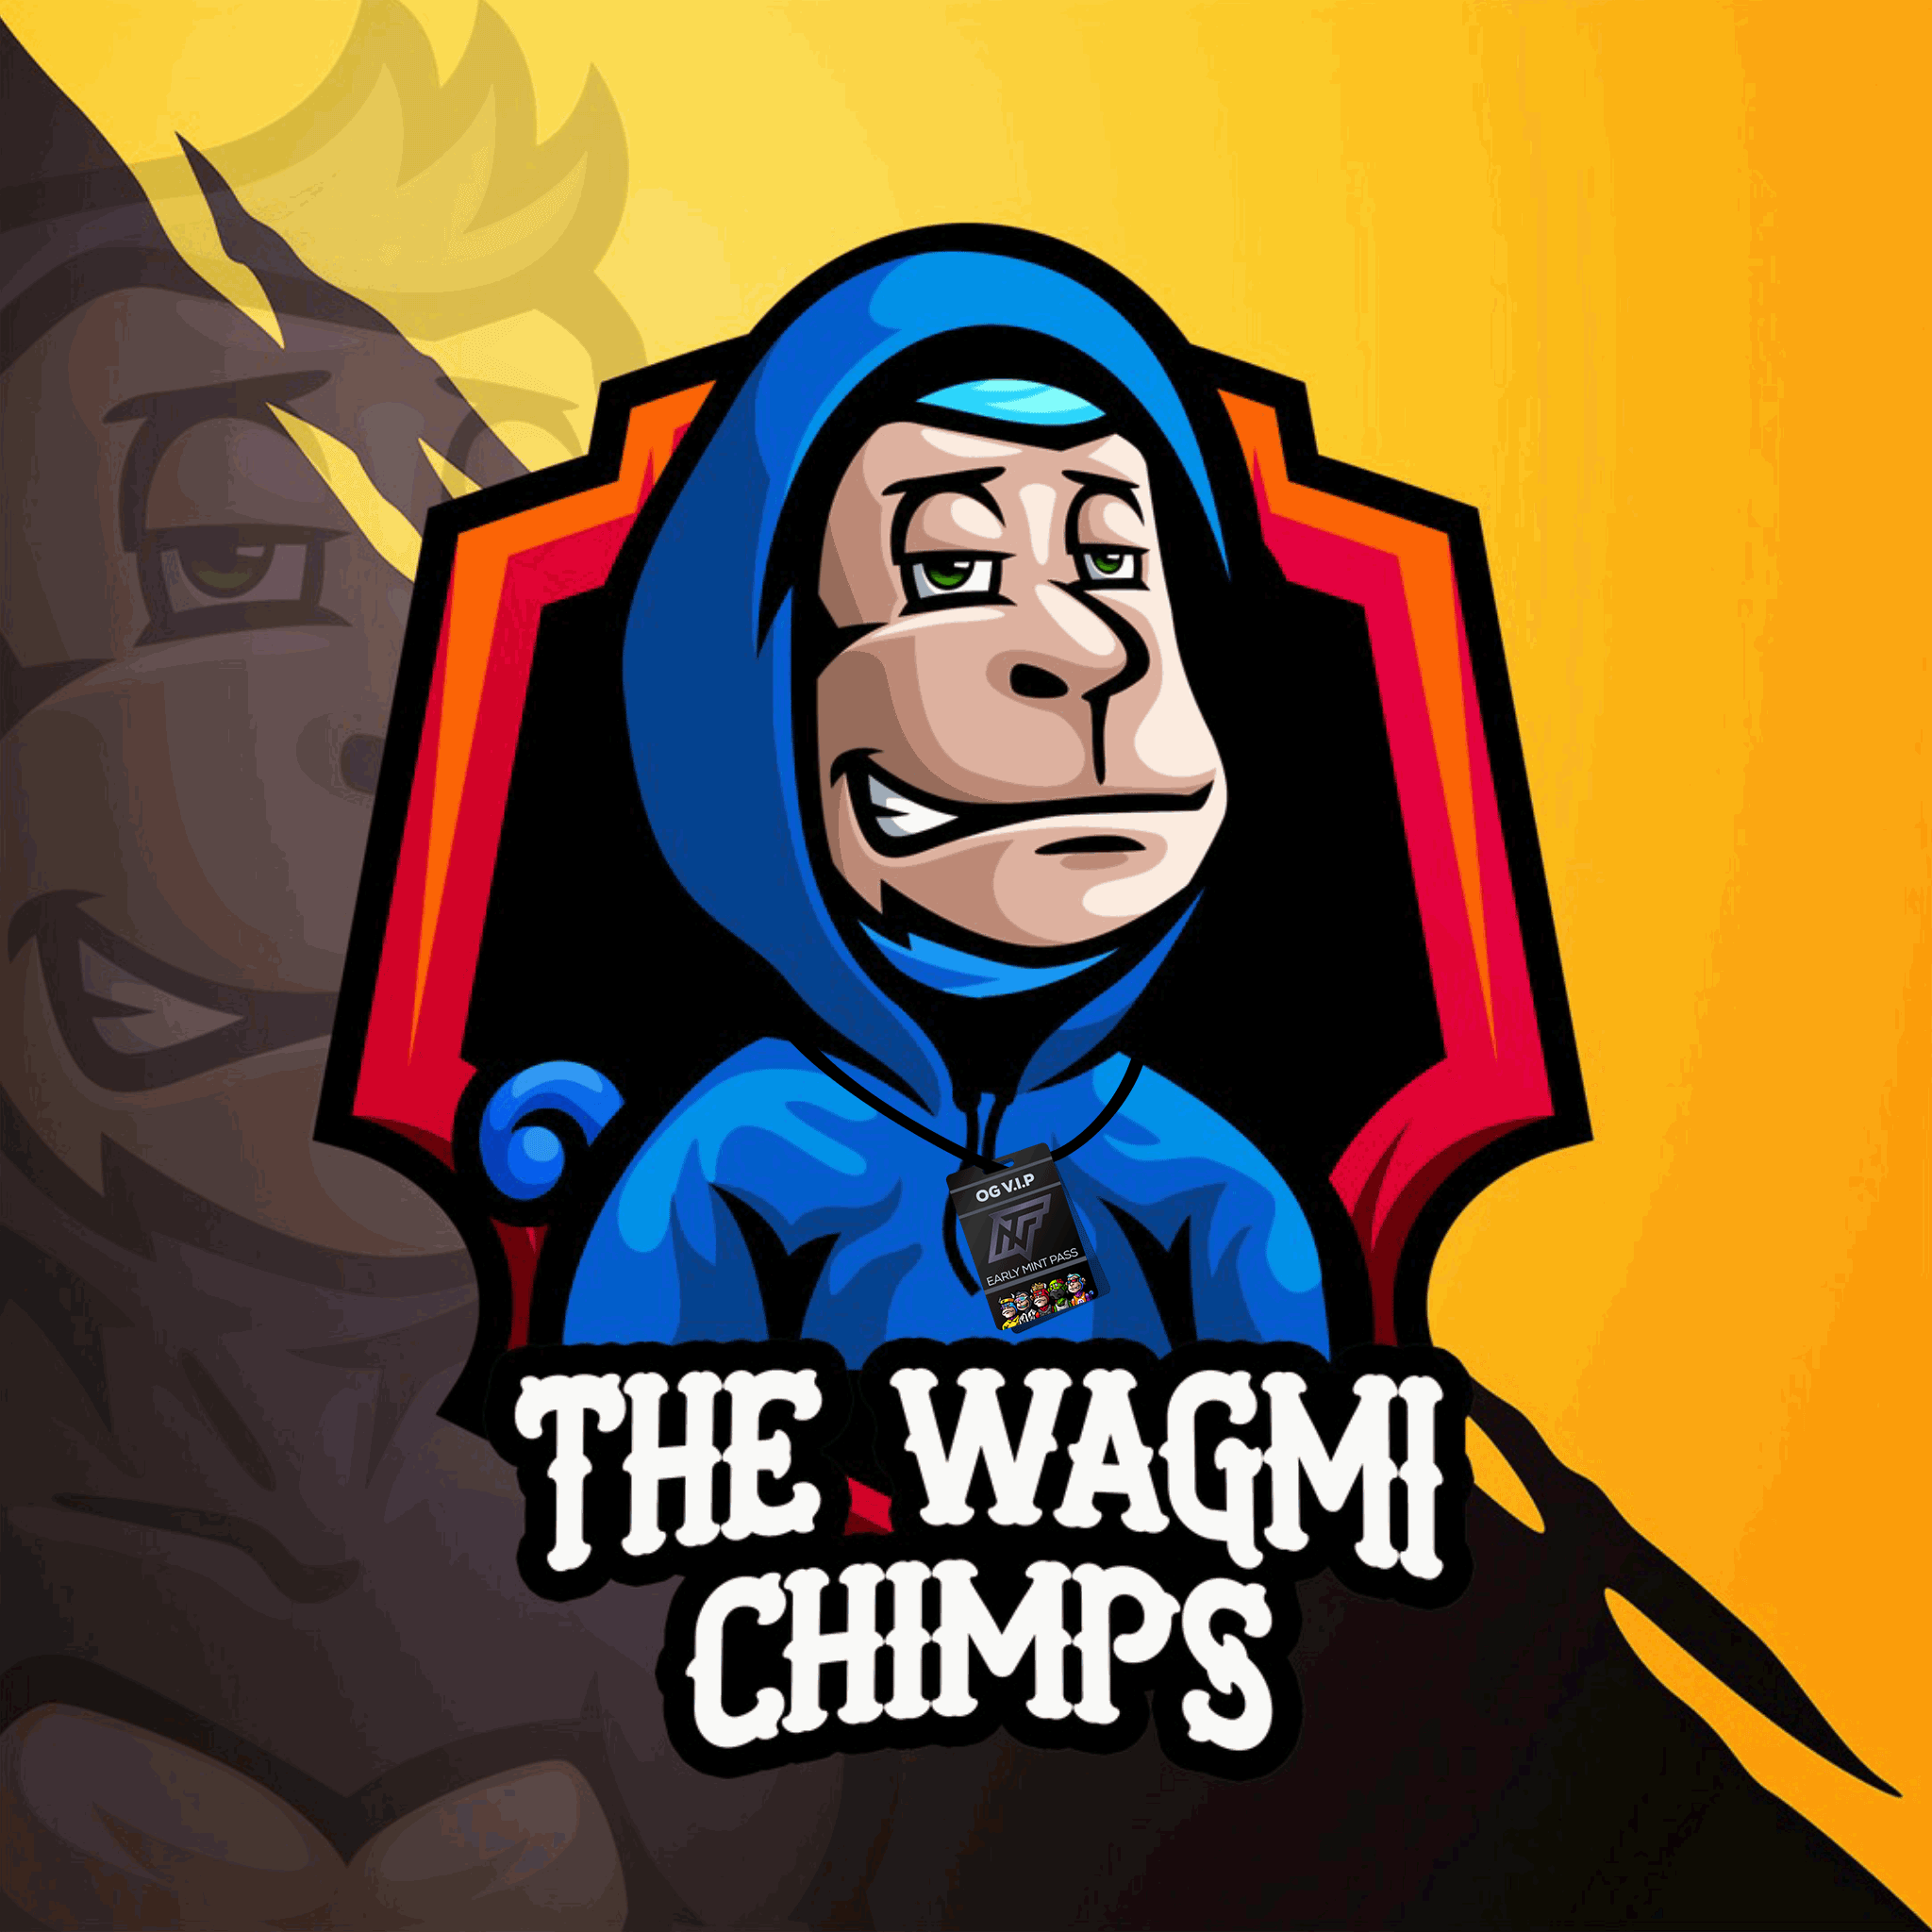 The Wagmi Chimps